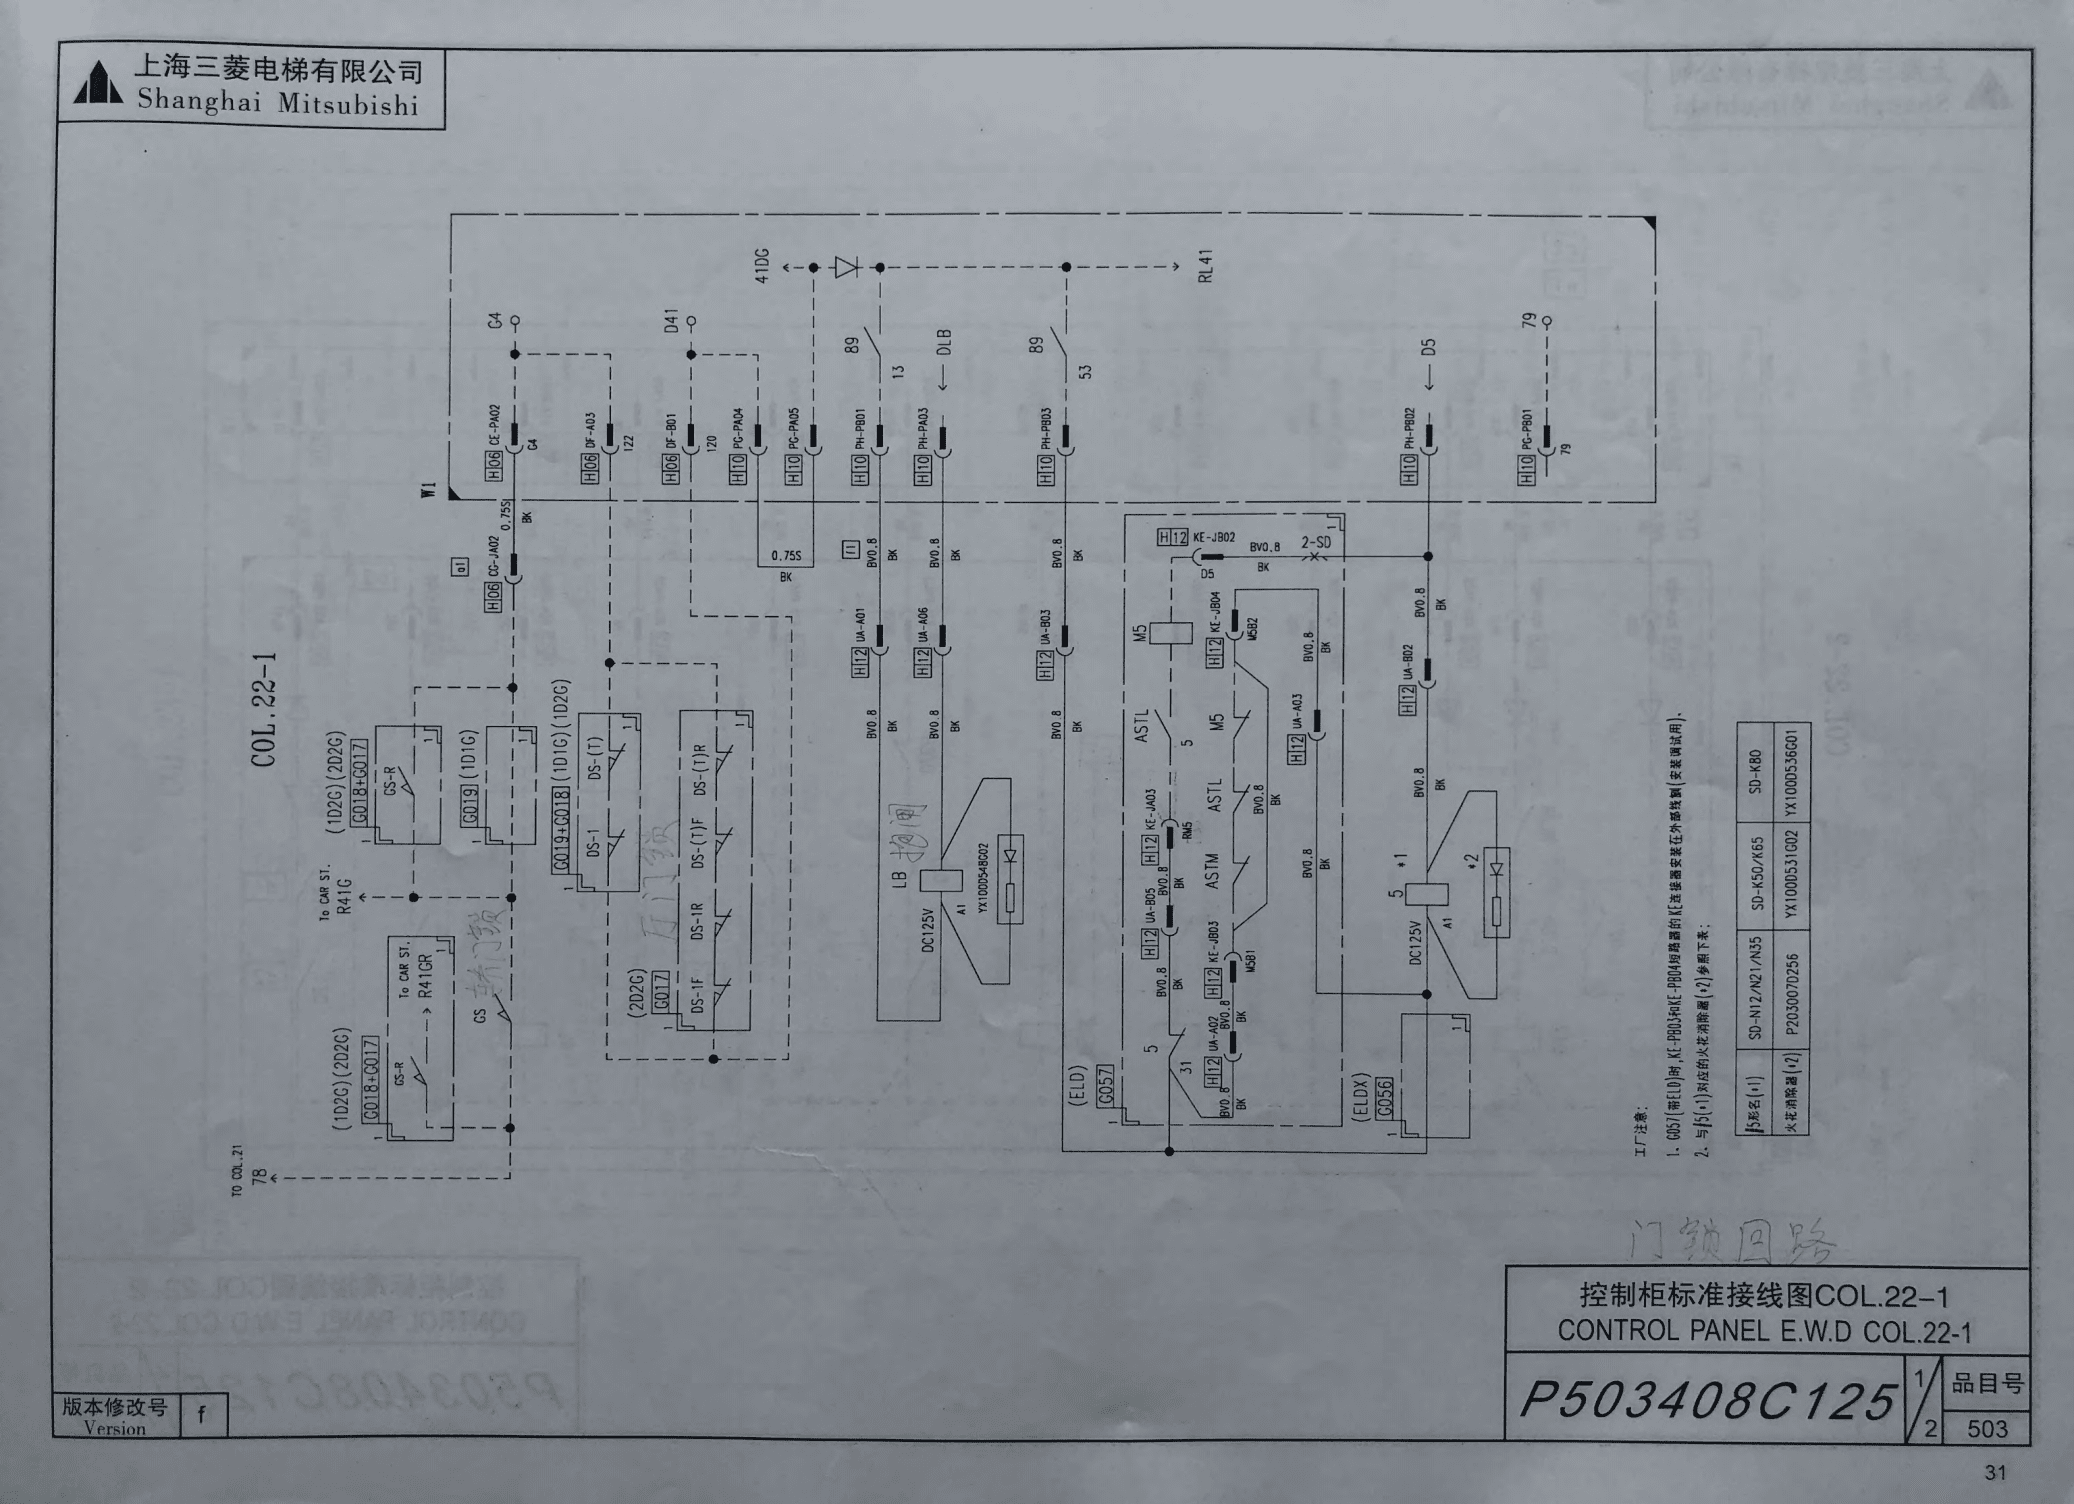 三菱legy电梯安全回路详解: 轿厢回路: 79-cg插件ja01号线-轿厢急停